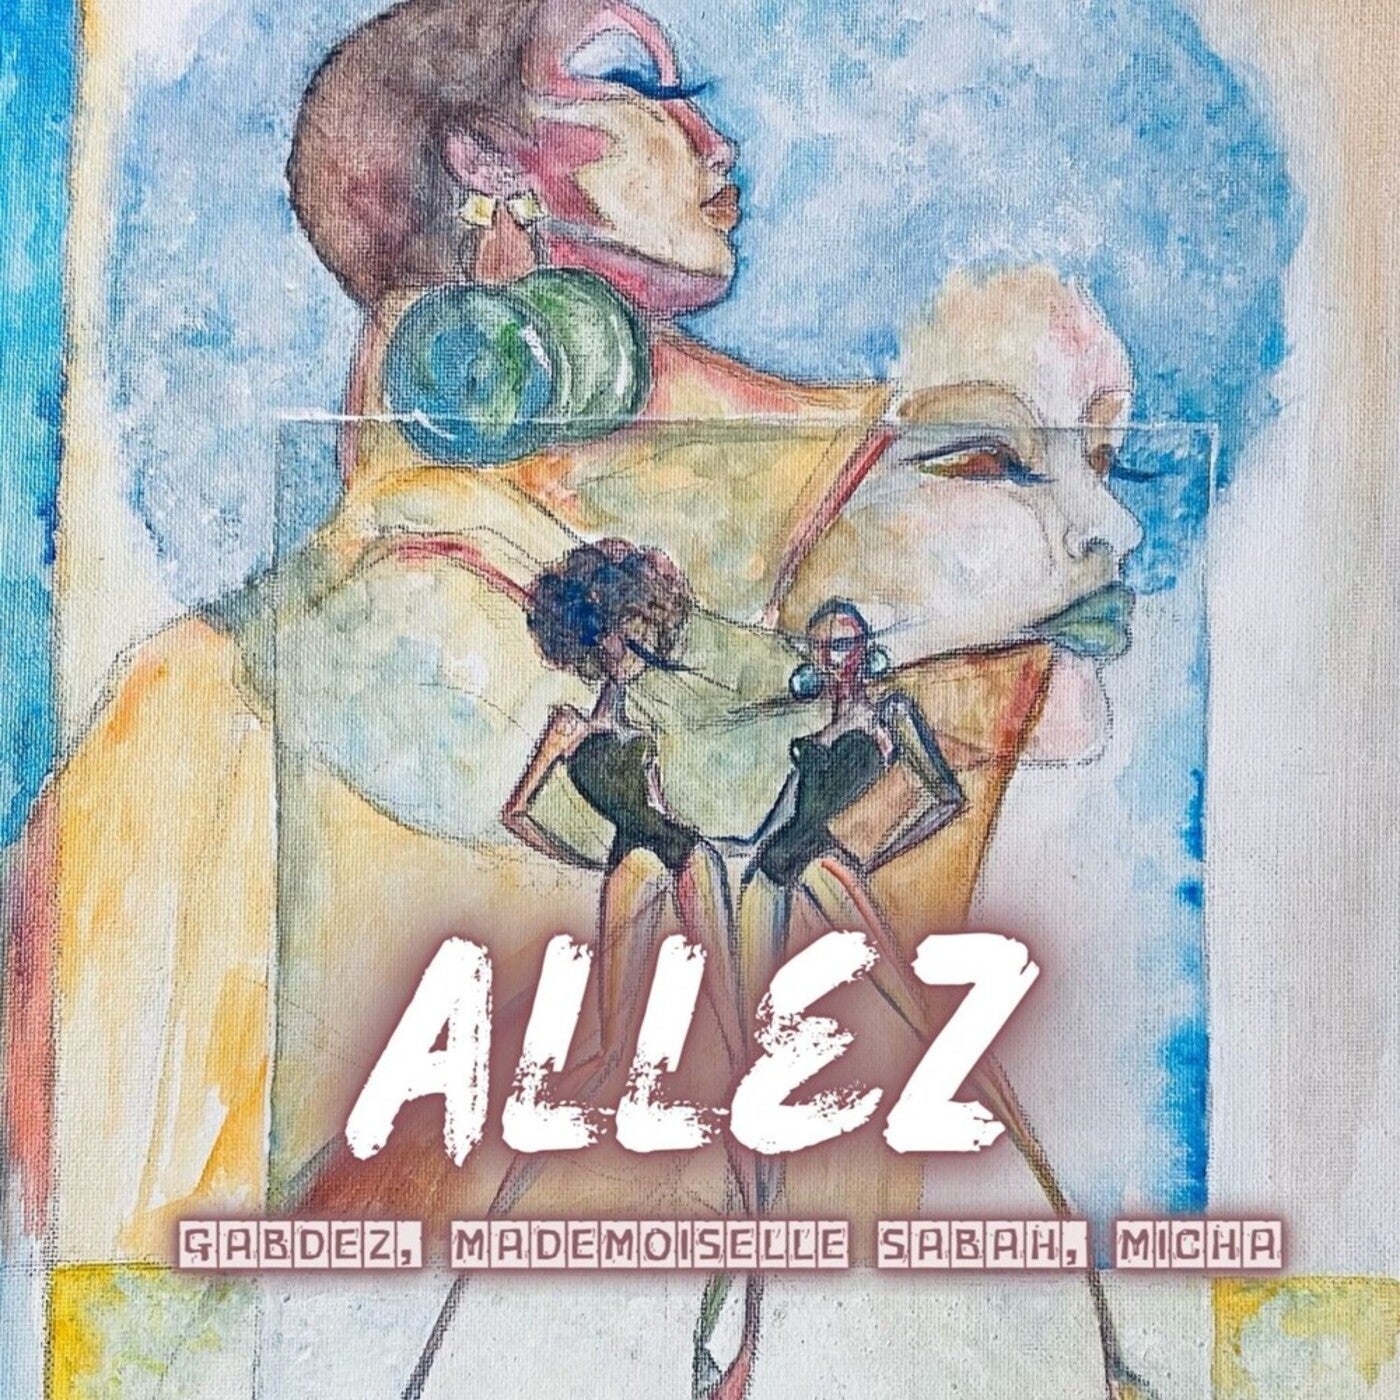 Cover - Micha, Gabdez, Mademoiselle Sabah - Allez (Original Mix)